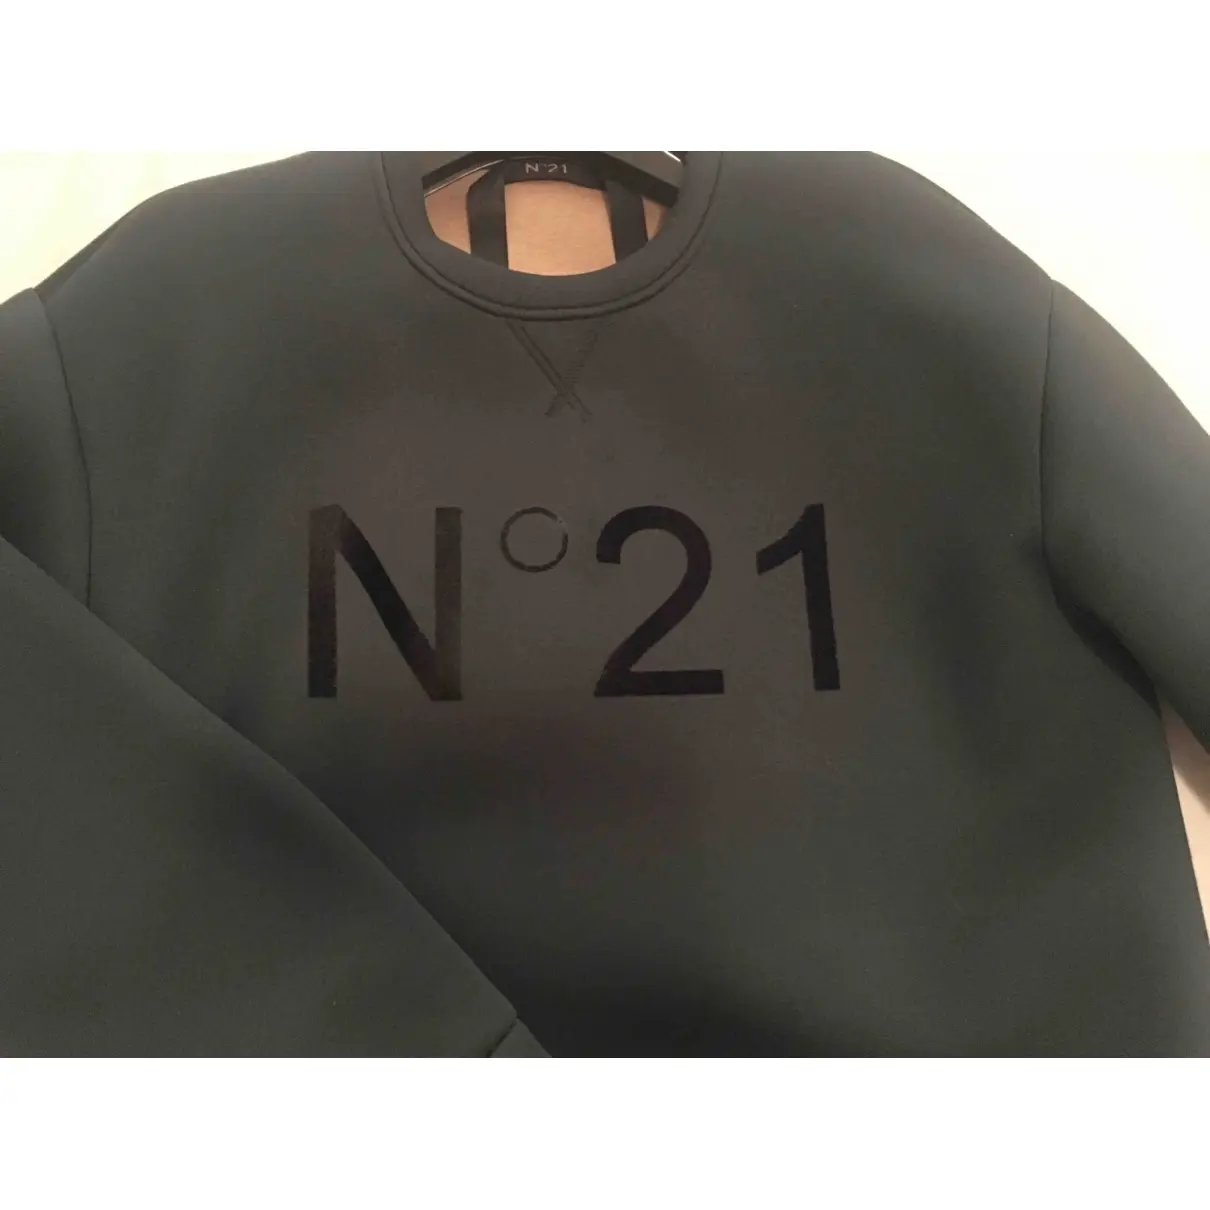 Buy N°21 Sweatshirt online